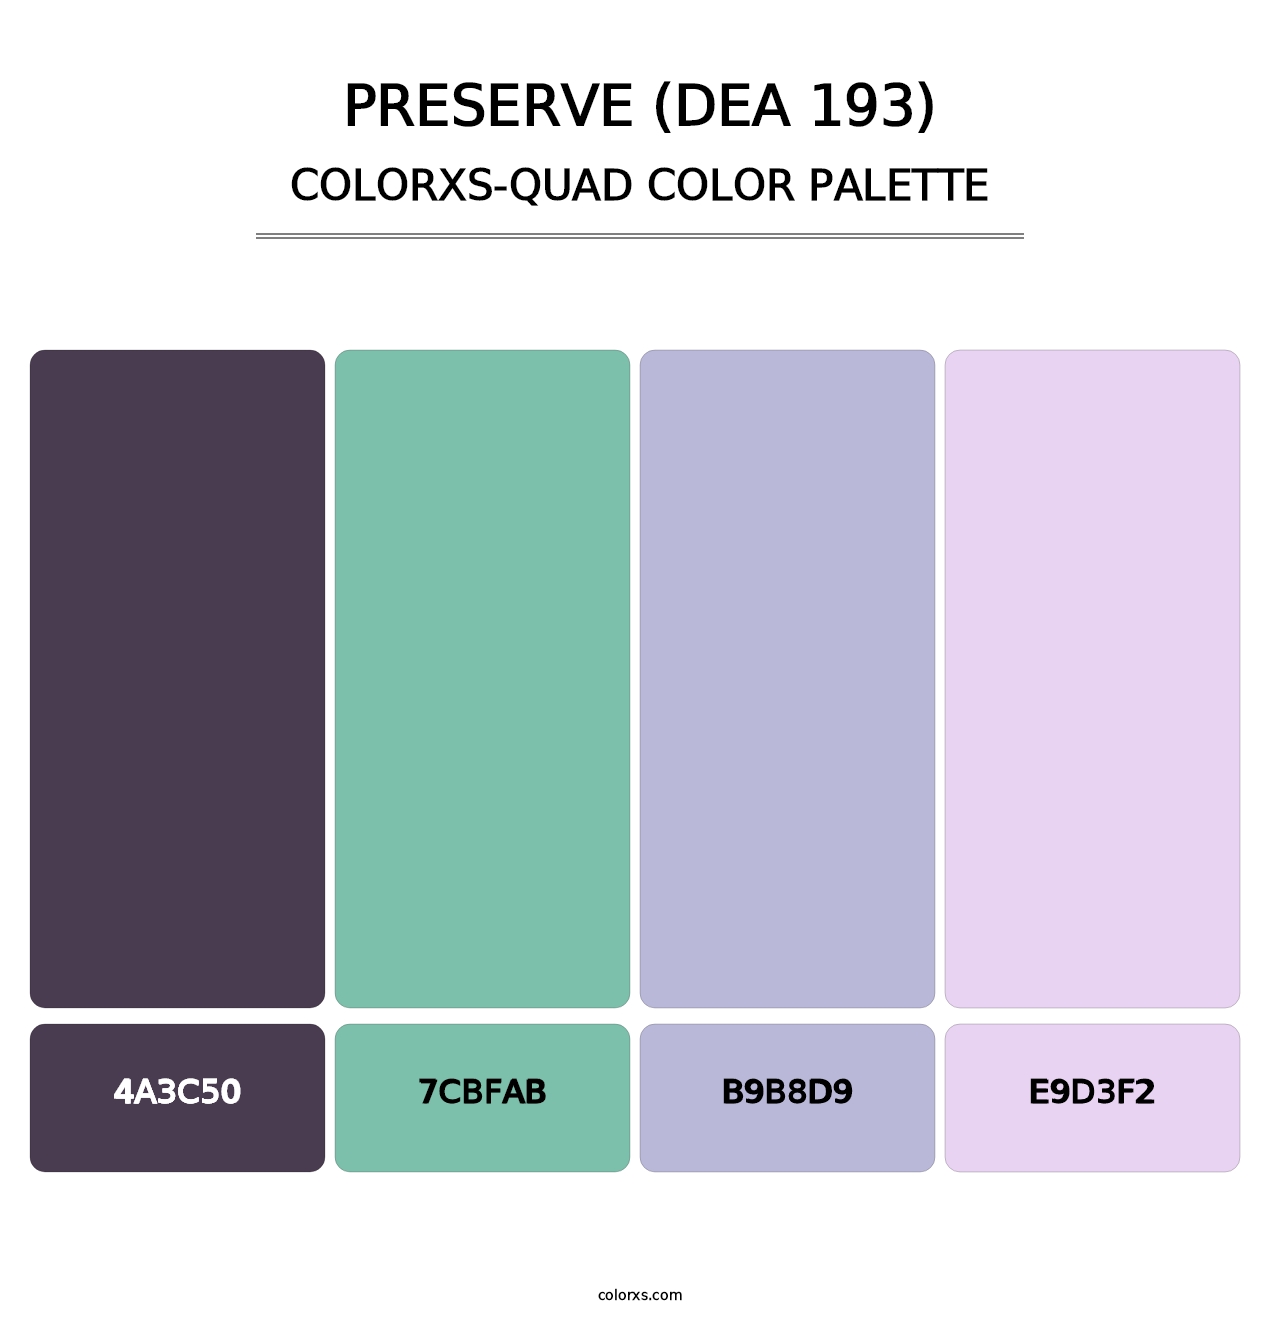 Preserve (DEA 193) - Colorxs Quad Palette